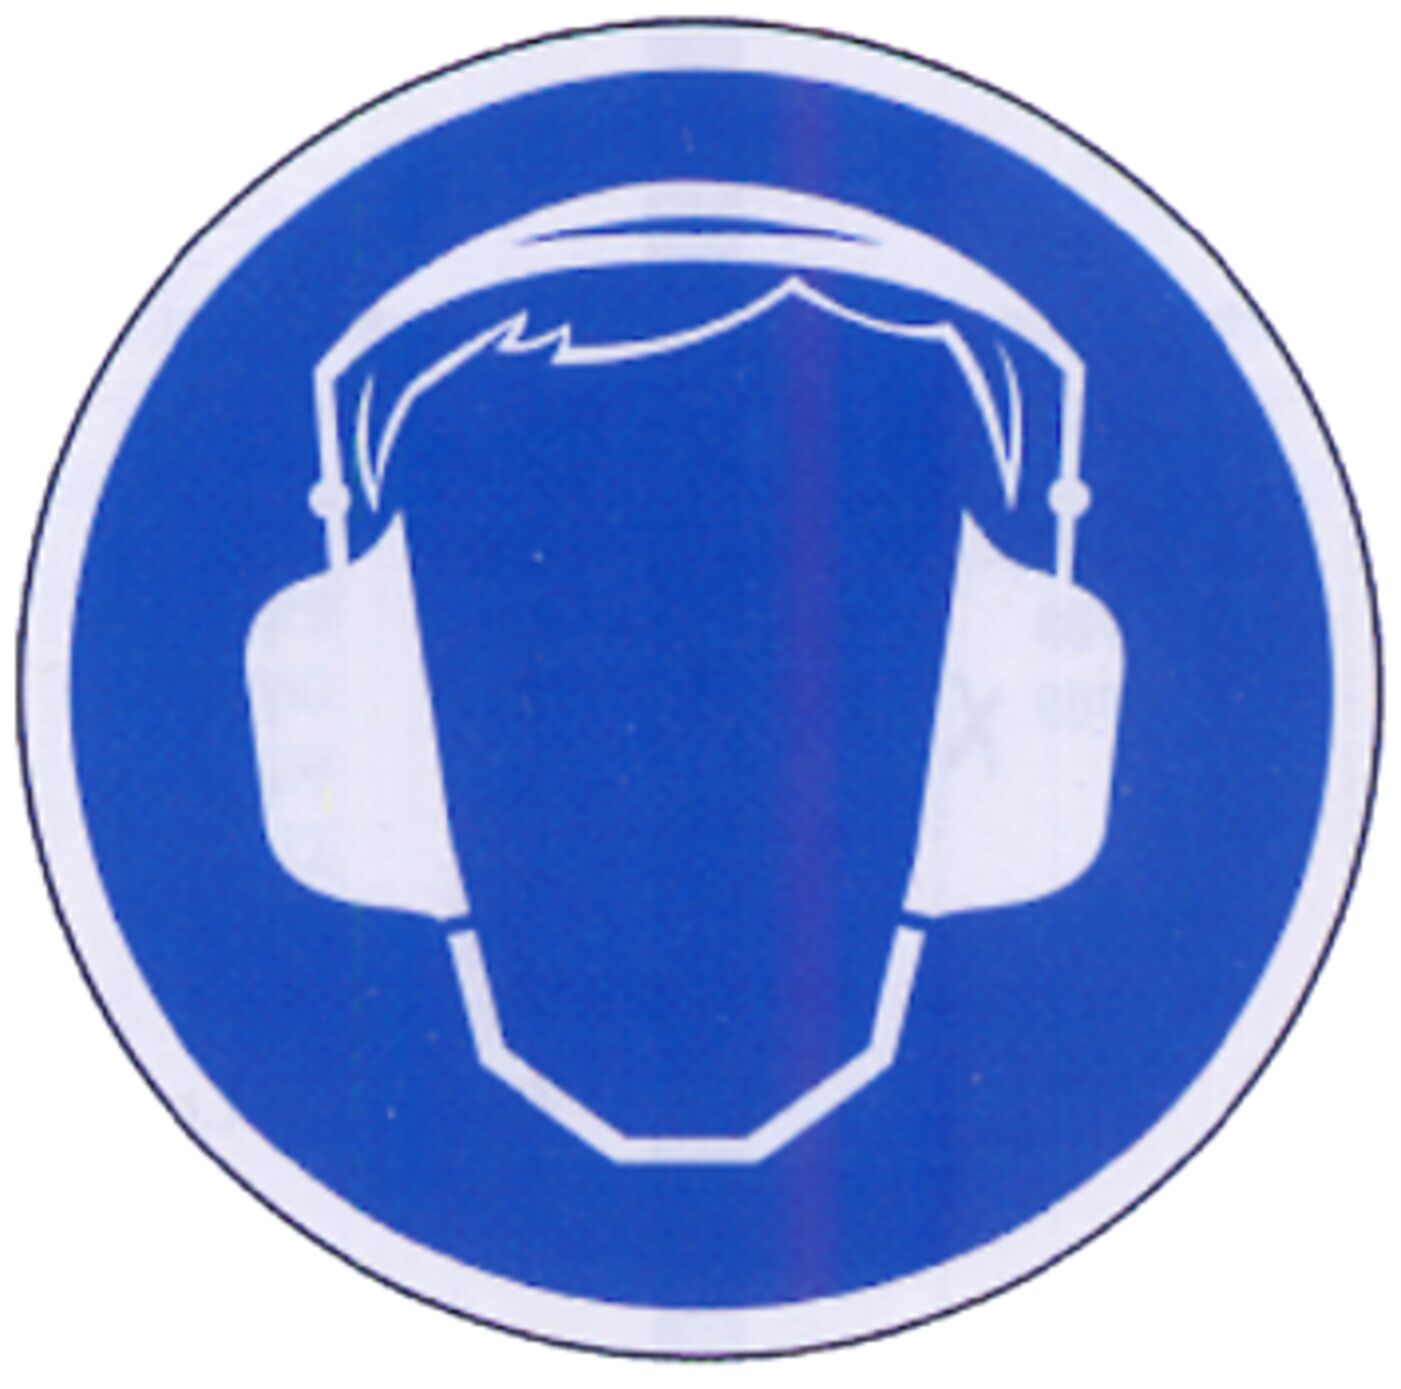 Panneau protection auditive obligatoire